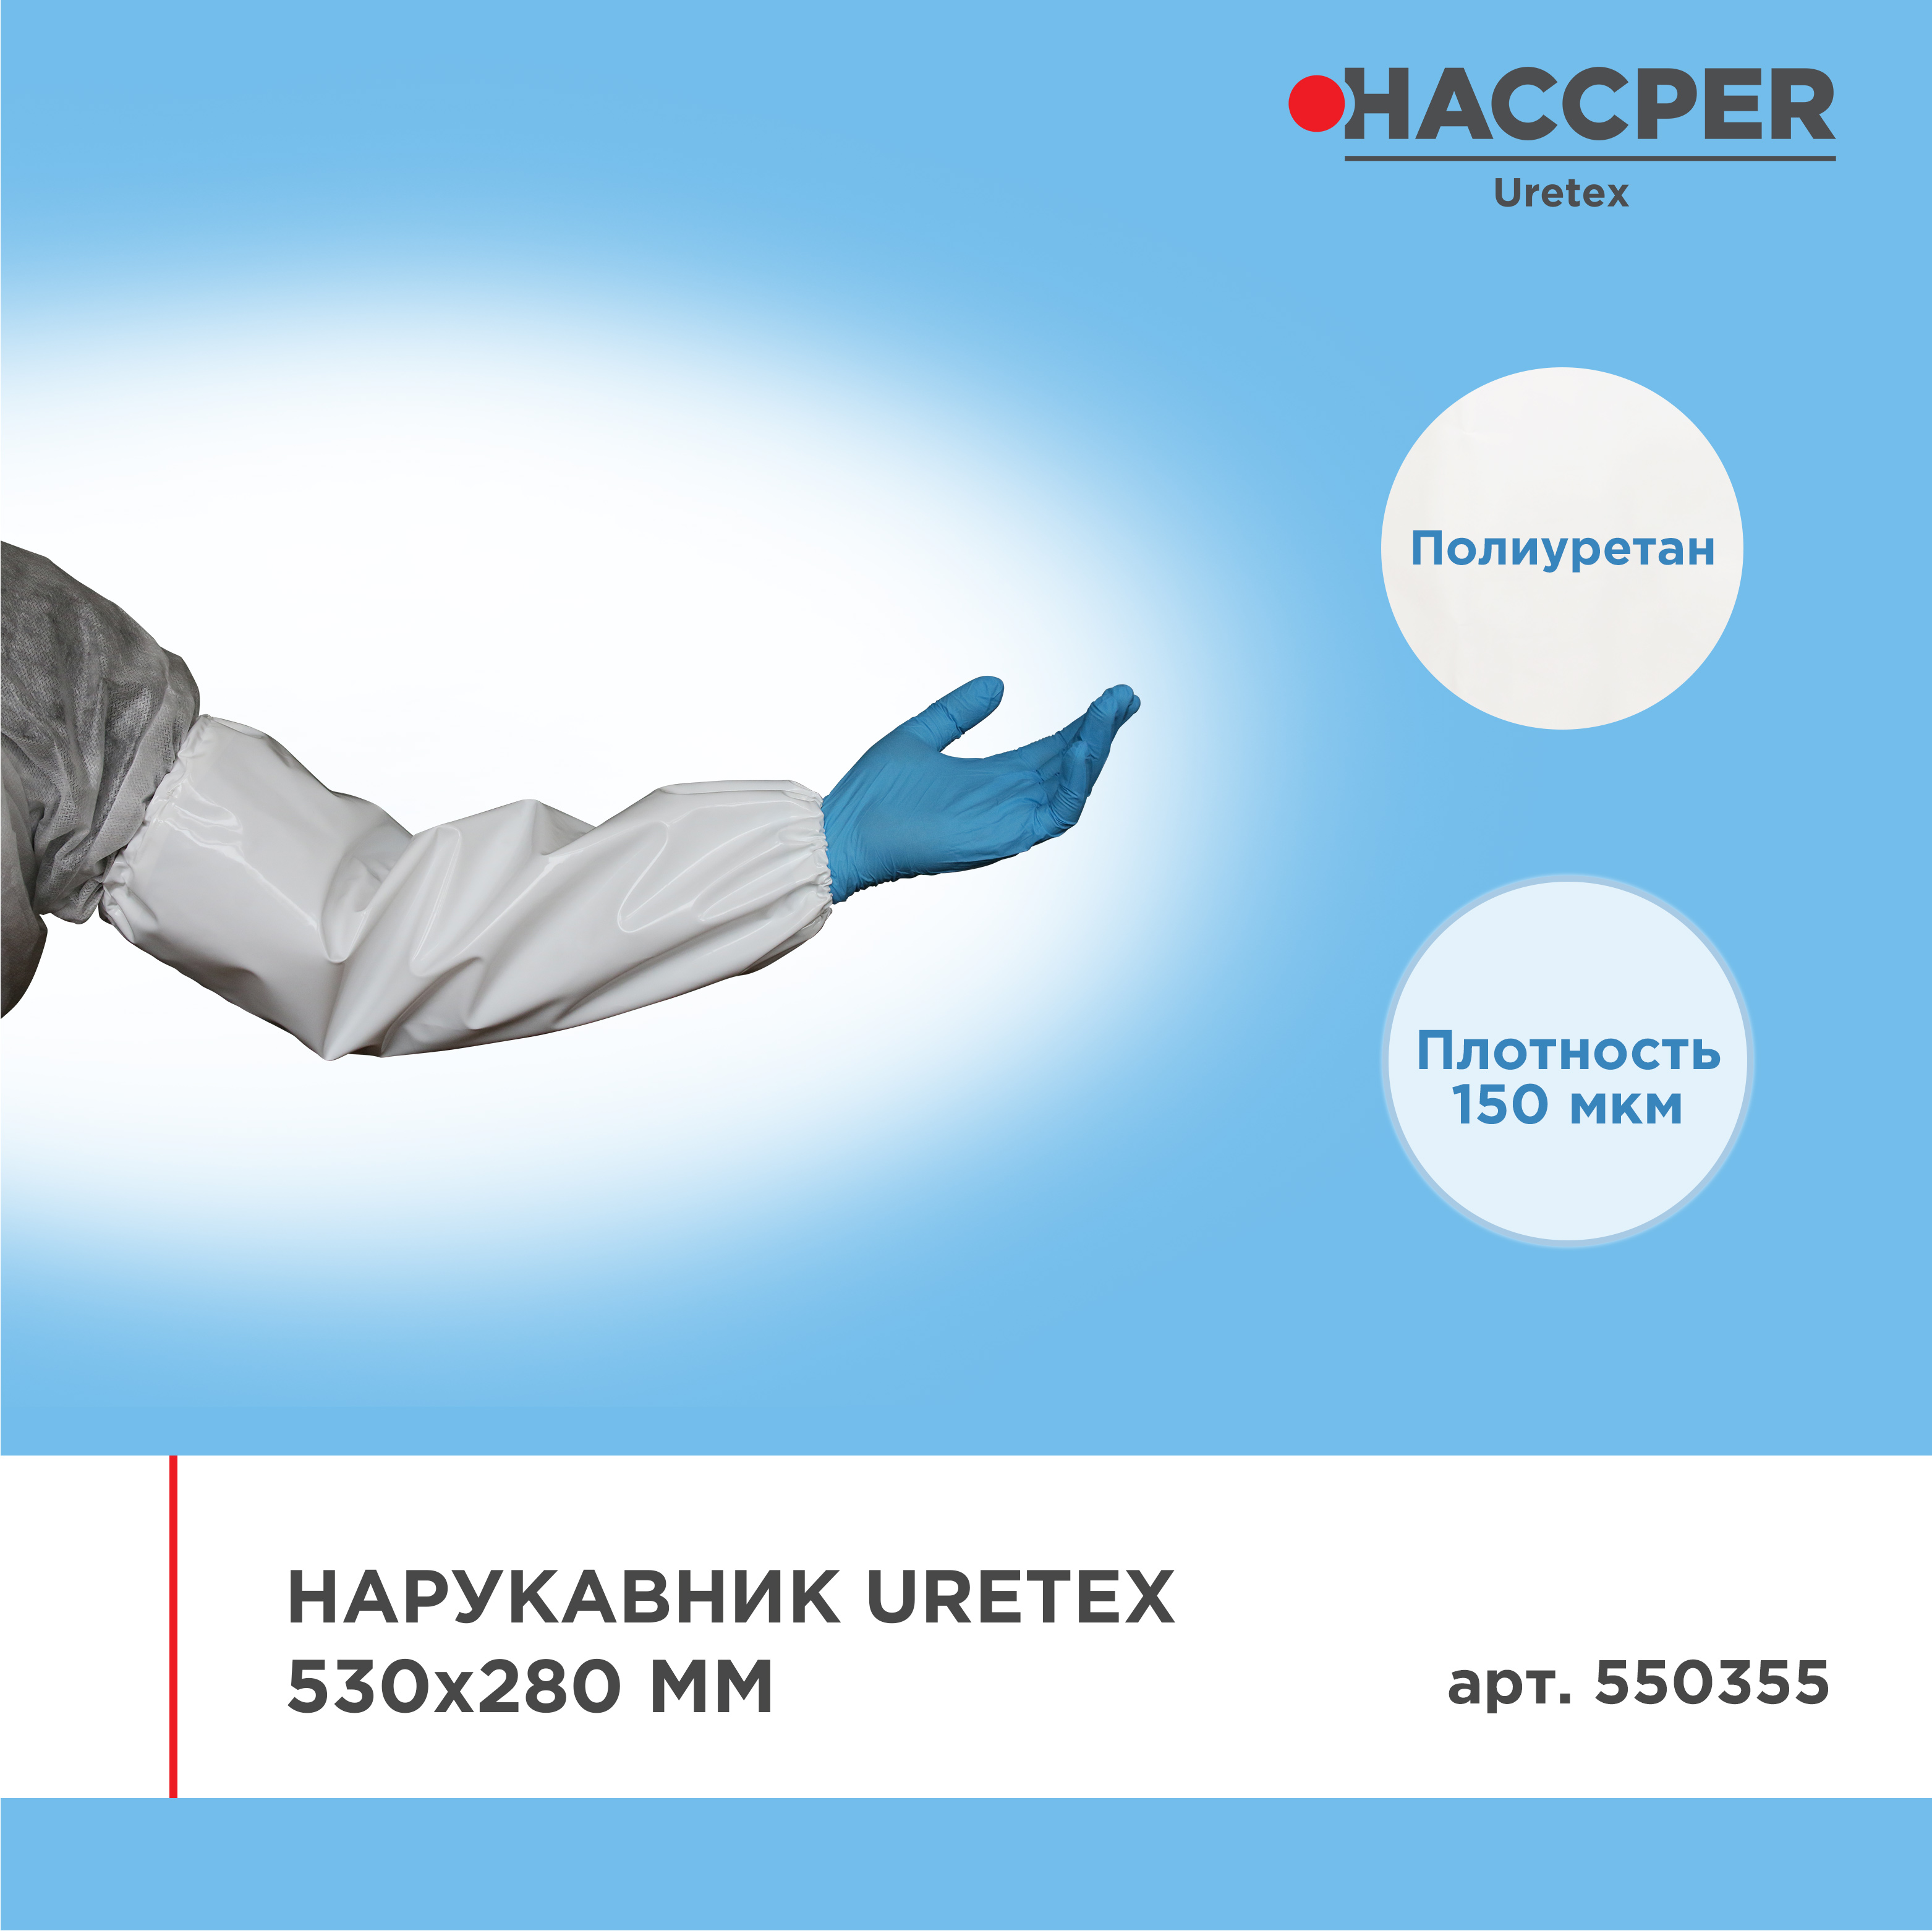 Нарукавник HACCPER Uretex 530х280 мм, 150 мкм, белый